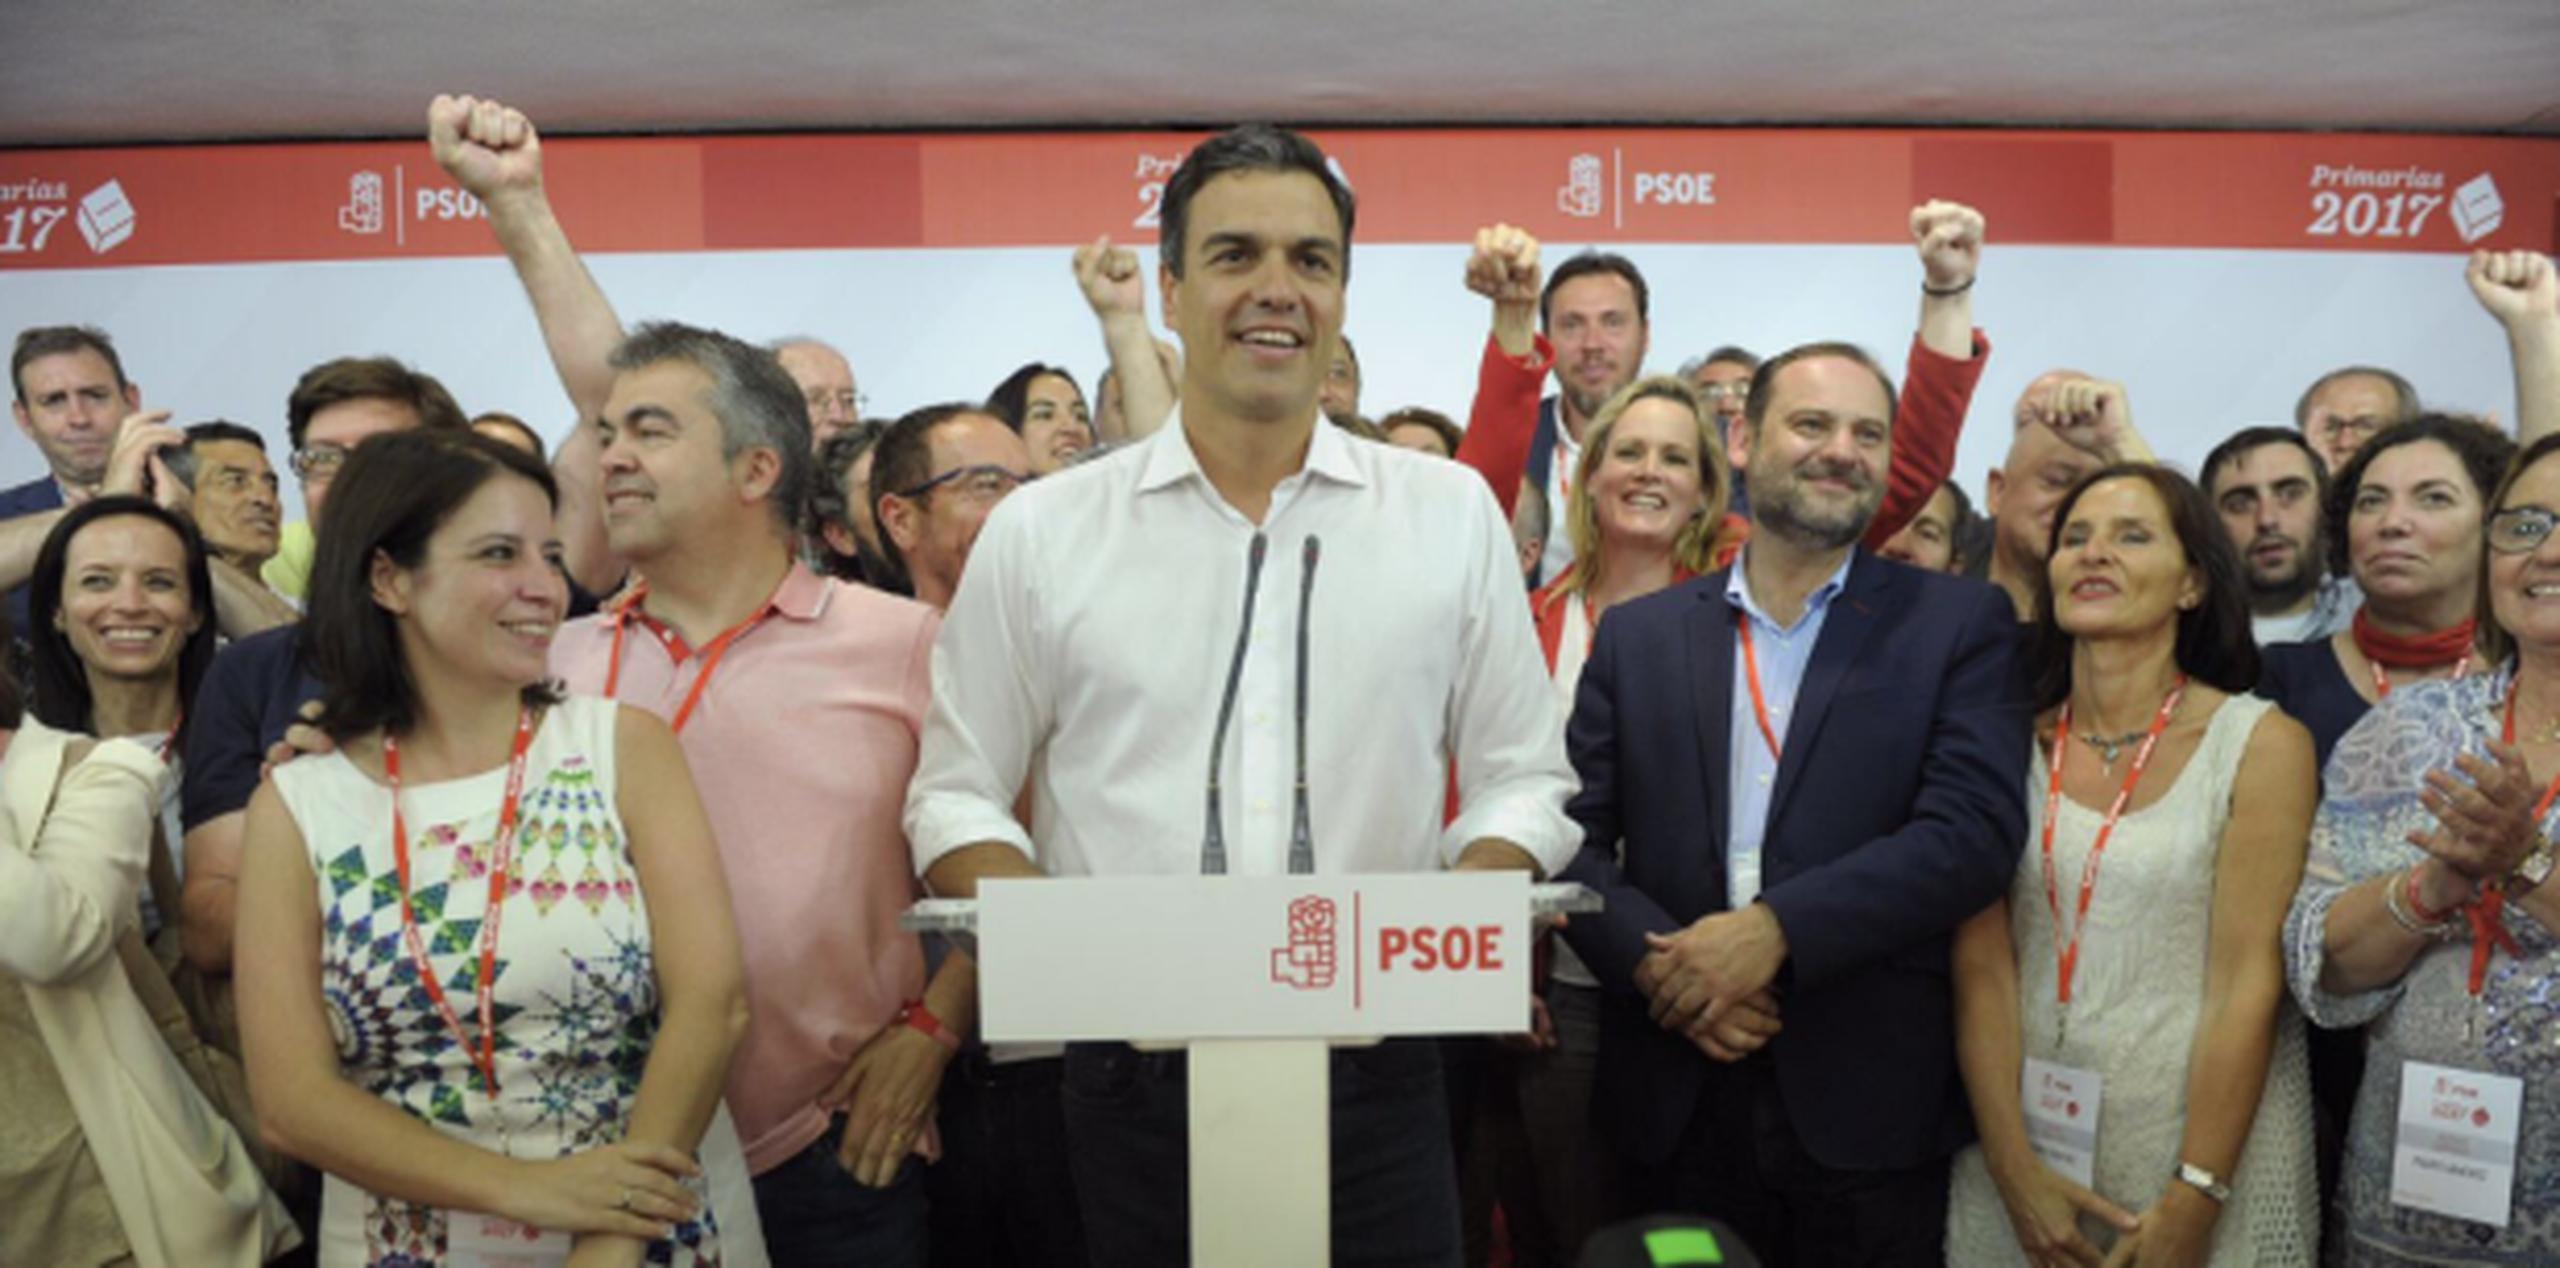 Pedro Sánchez regresó a la dirección de la segunda fuerza política de España. (Twitter)